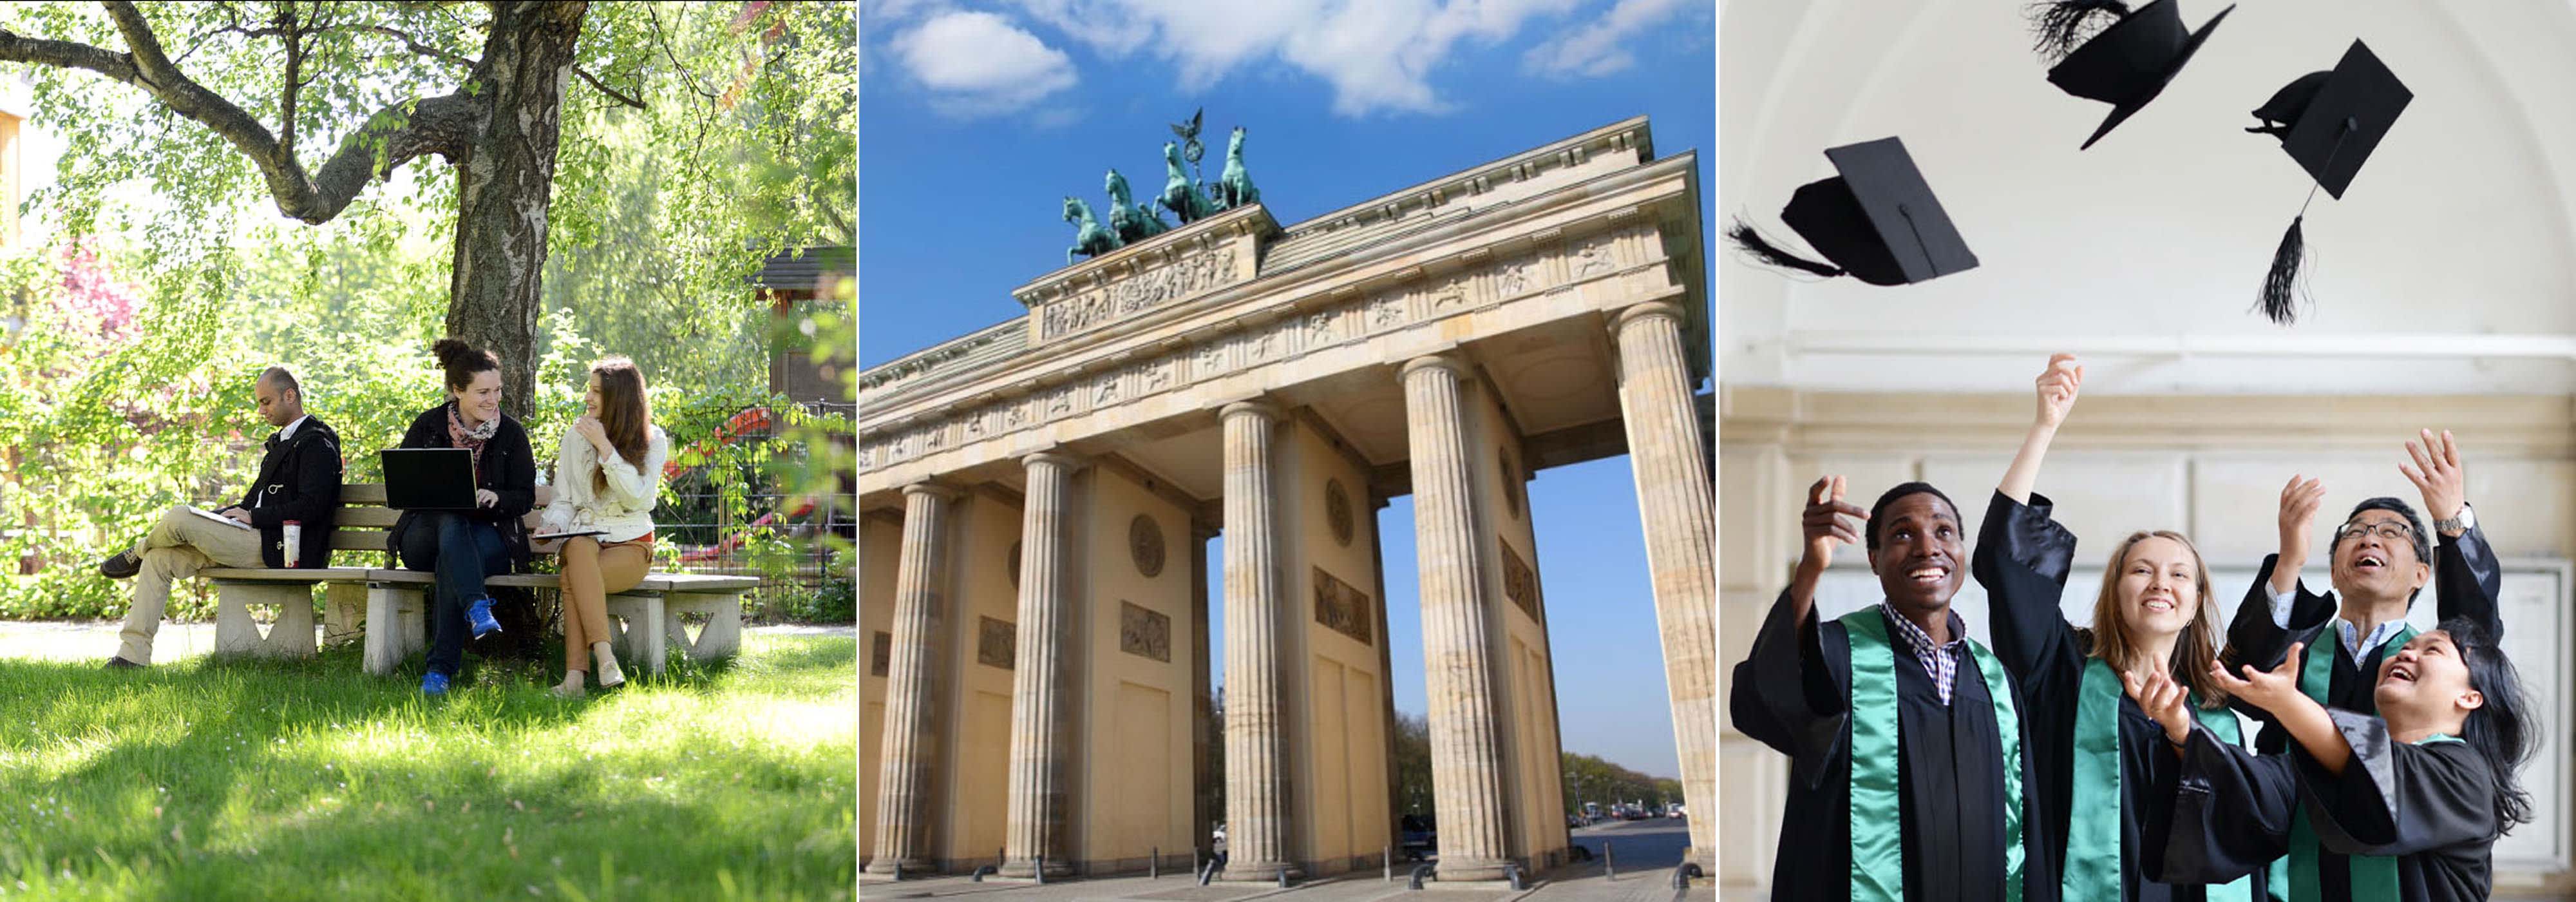 Berlin Full-Time MBA | Berlin Professional School